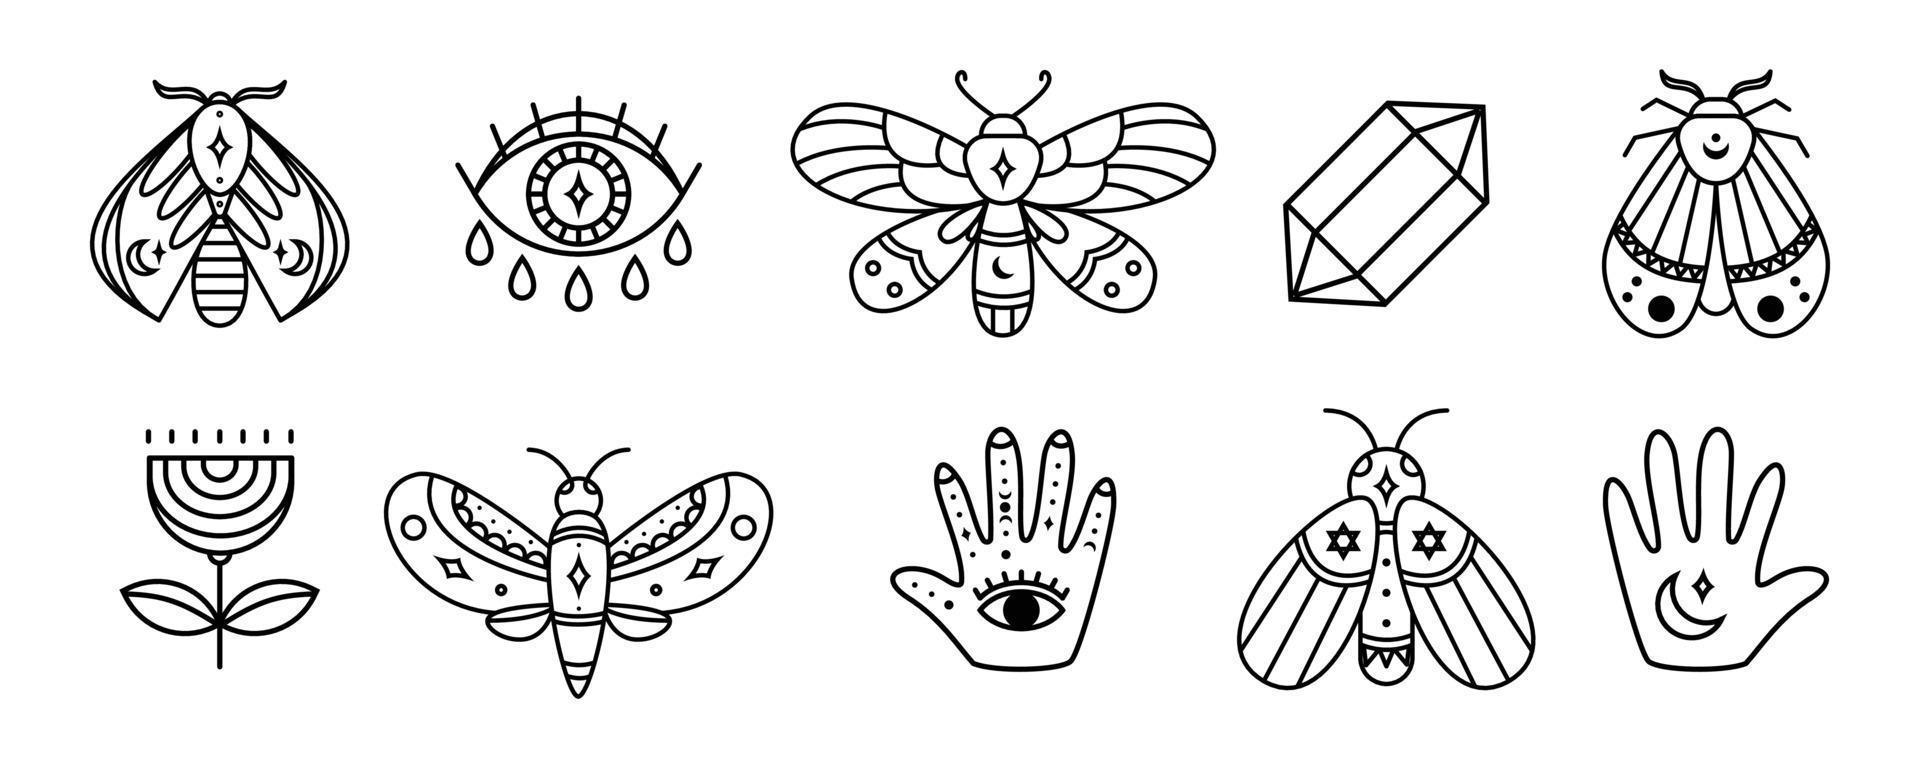 conjunto de bruxa e design mágico com borboleta, mão, olho de deus, cristal. ilustração do símbolo boho e tarô vetor